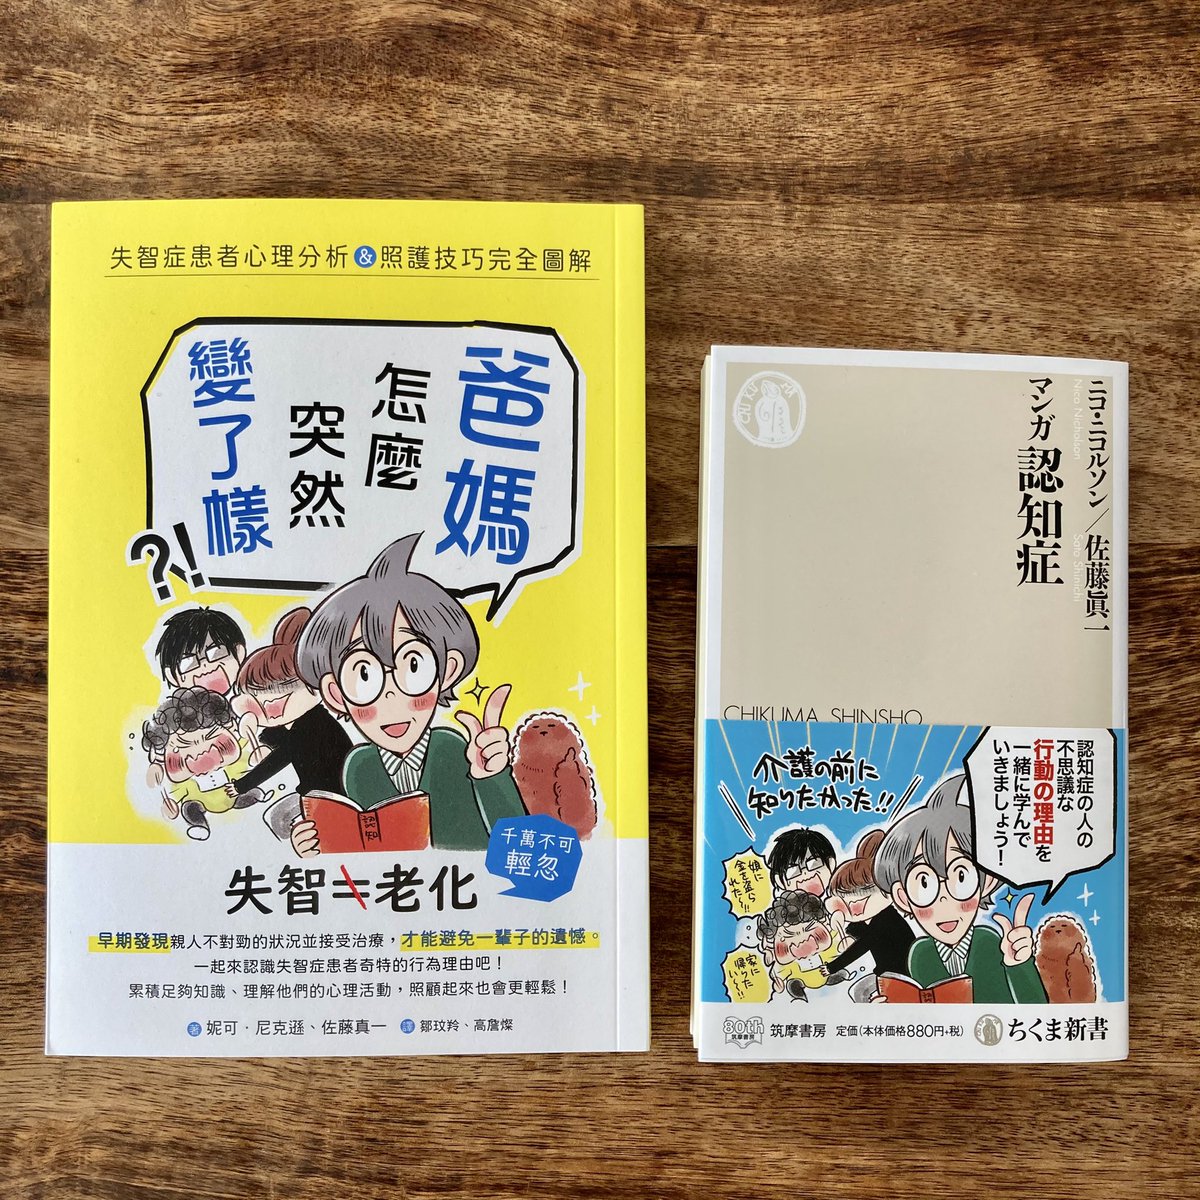 「マンガ認知症」の台湾版が東販出版さんから発売です。日本版より少し大きめで読みやすそう。中国語でも漢字の雰囲気でけっこうわかるもんですね。手書きで描いた犬の「チェッ」というセリフまでちゃんと翻訳してあって嬉しい。台湾でもたくさん読んでもらえますように??

#失智症 #漫畫 